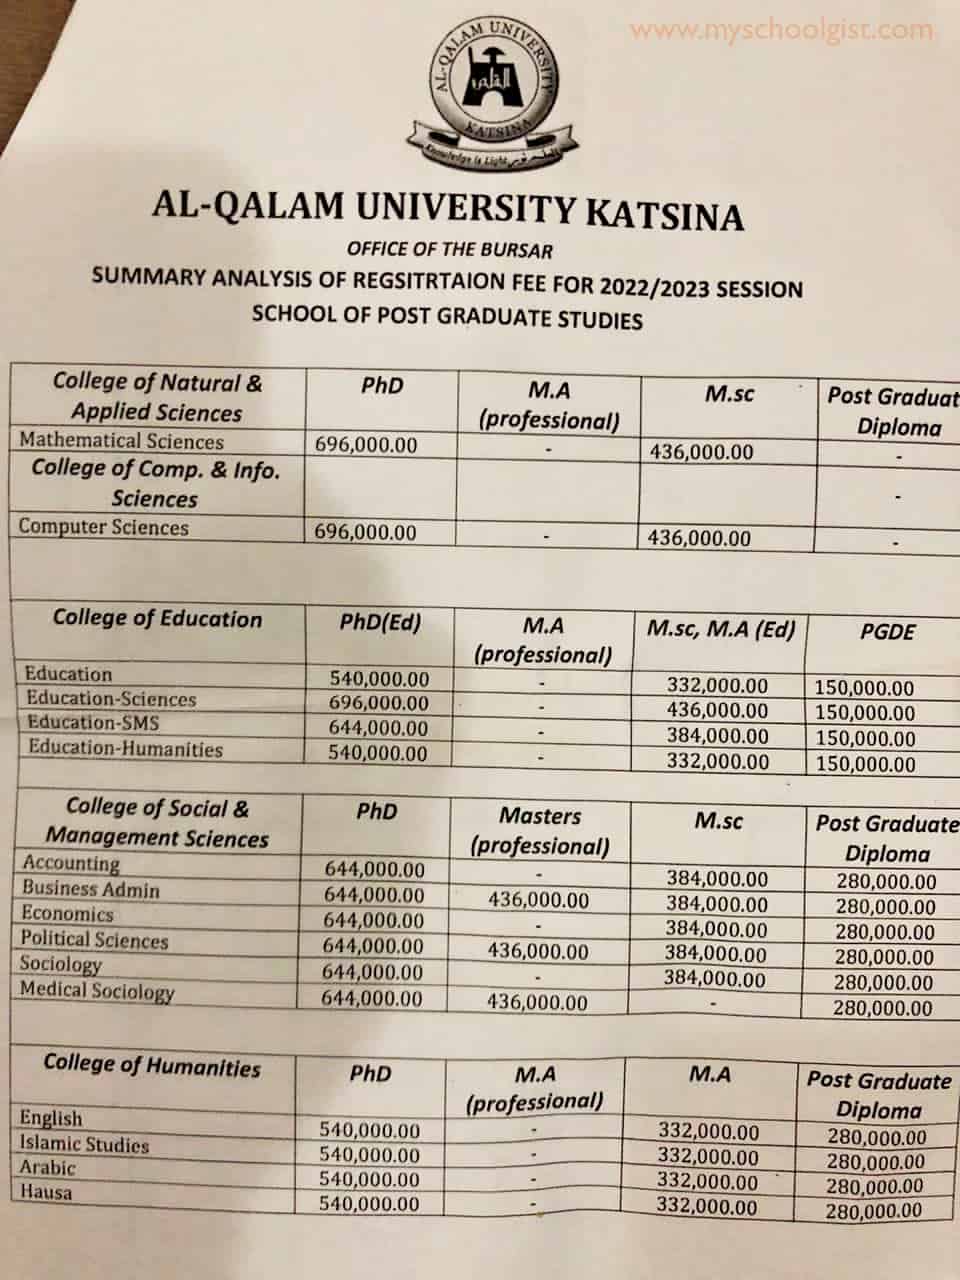 Al-Qalam University Katsina (AUK) Postgraduate School Fees - Summary Analysis